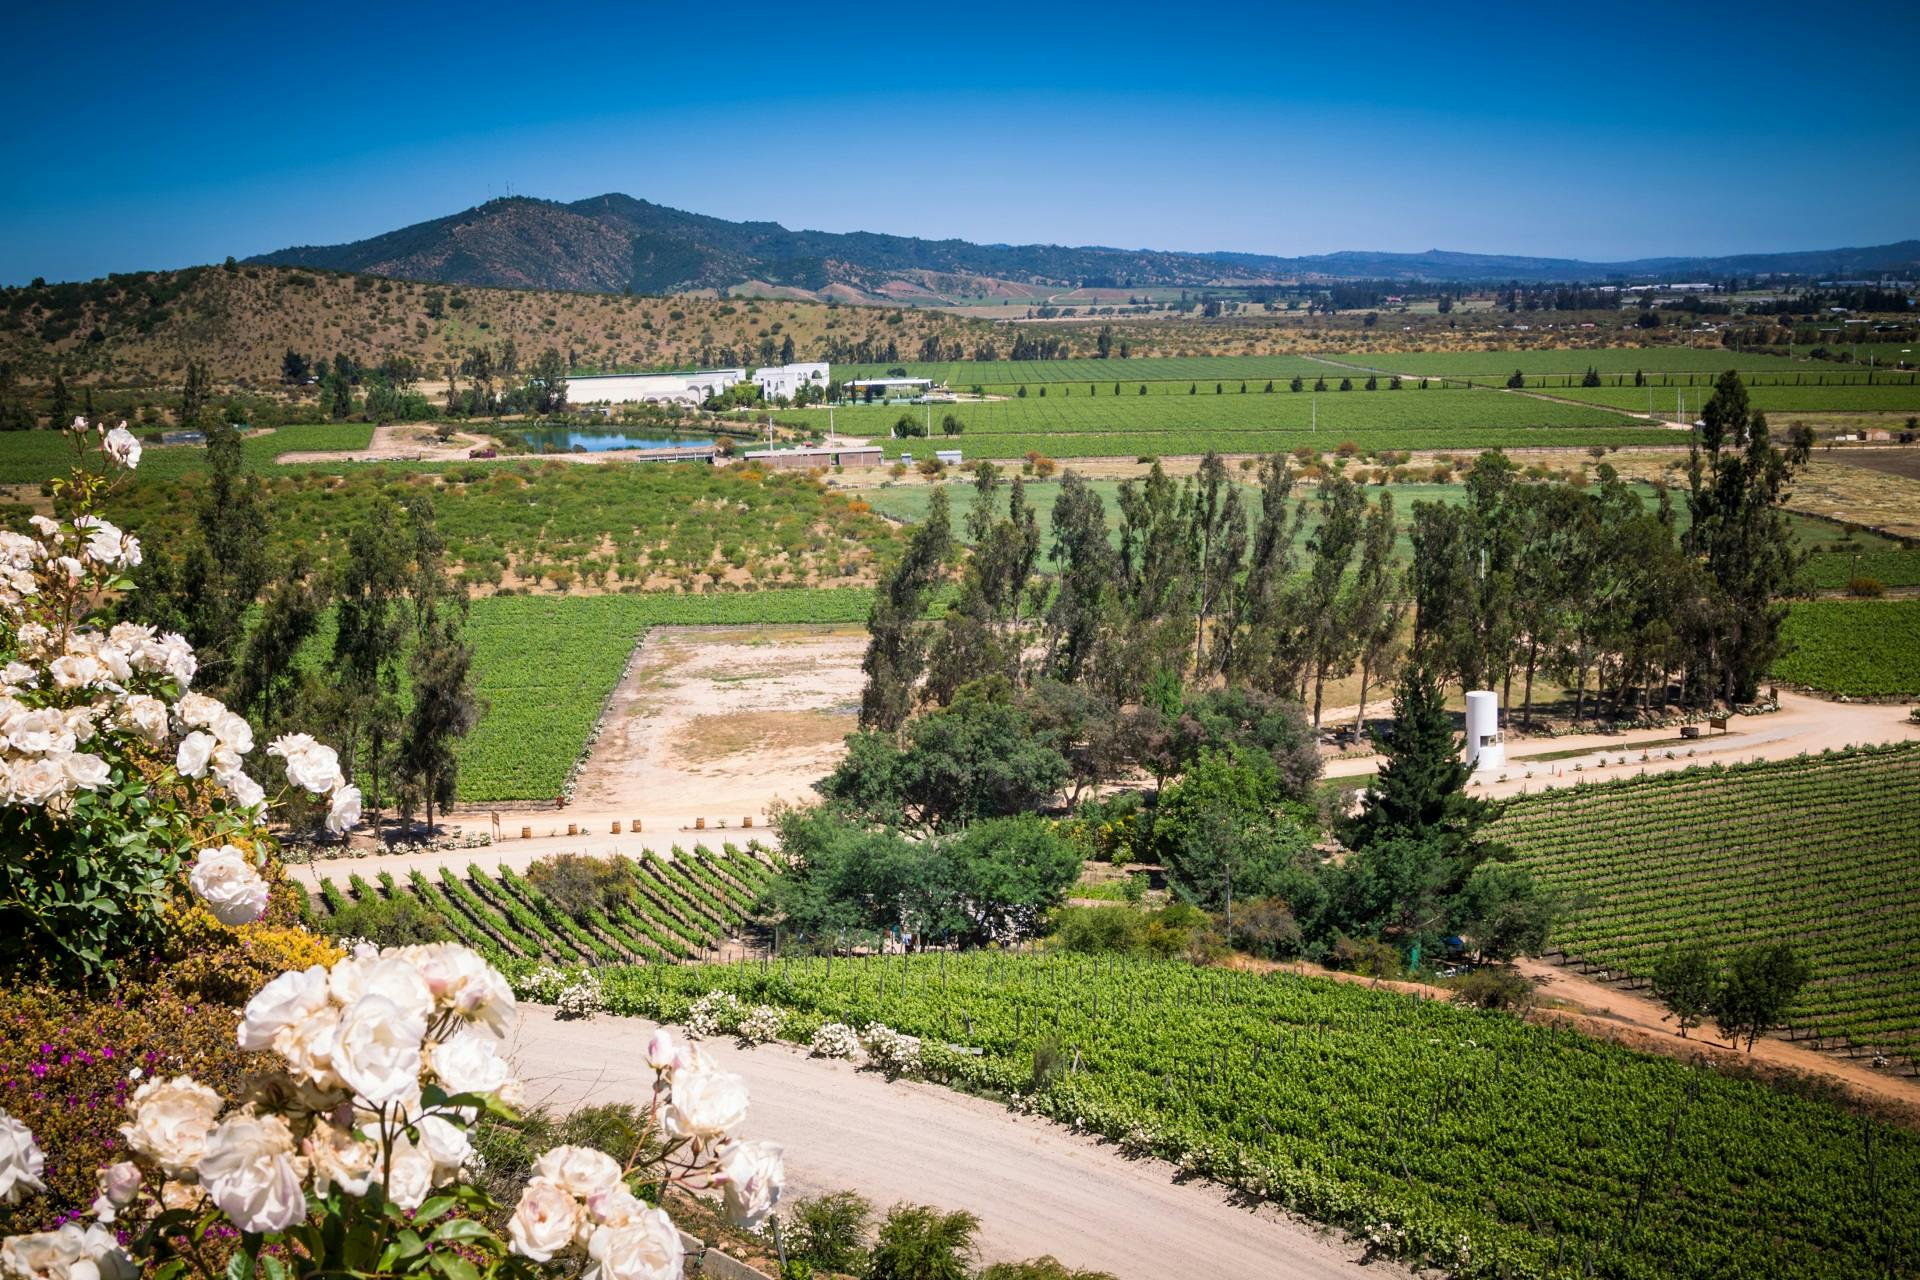 Tour guidato di Casablanca Valley e Matetic Vineyards con degustazione di vini